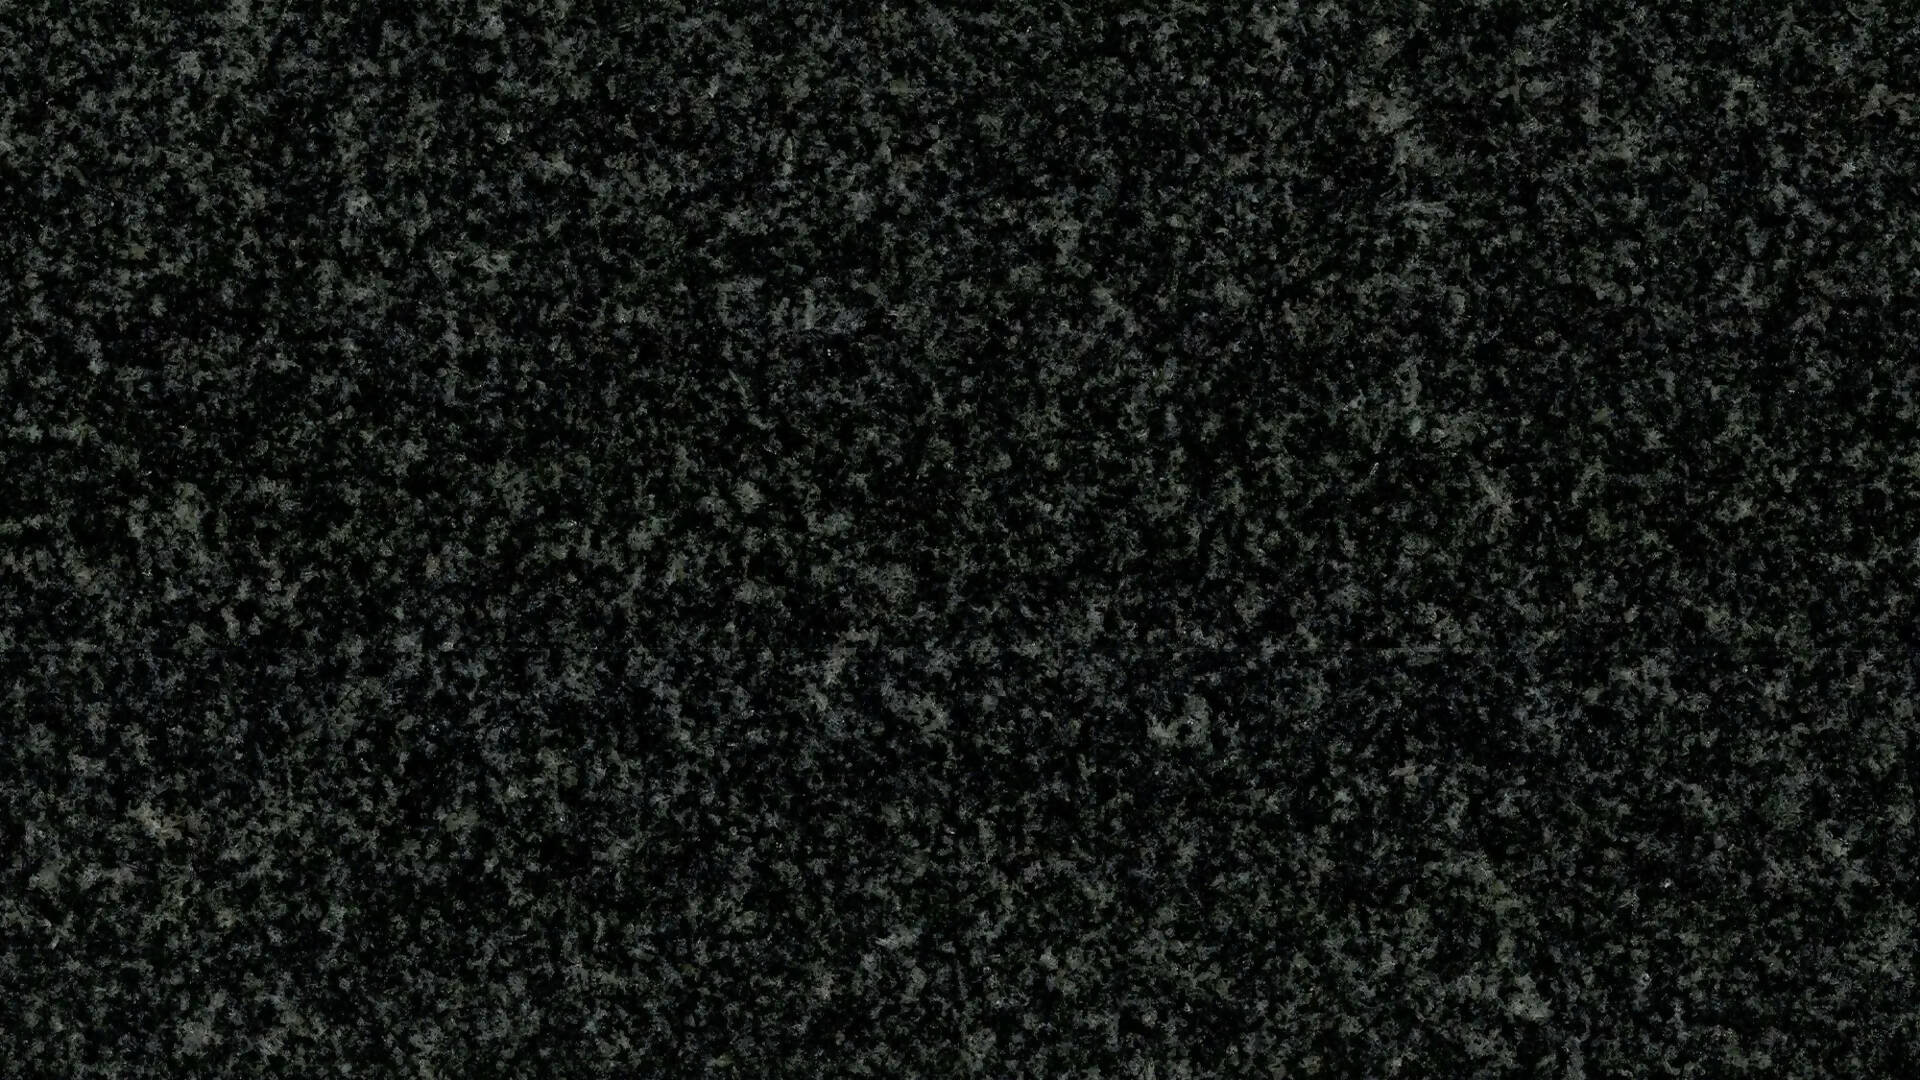 NARI BLACK GRANITE,Granite,Brachot,www.work-tops.com